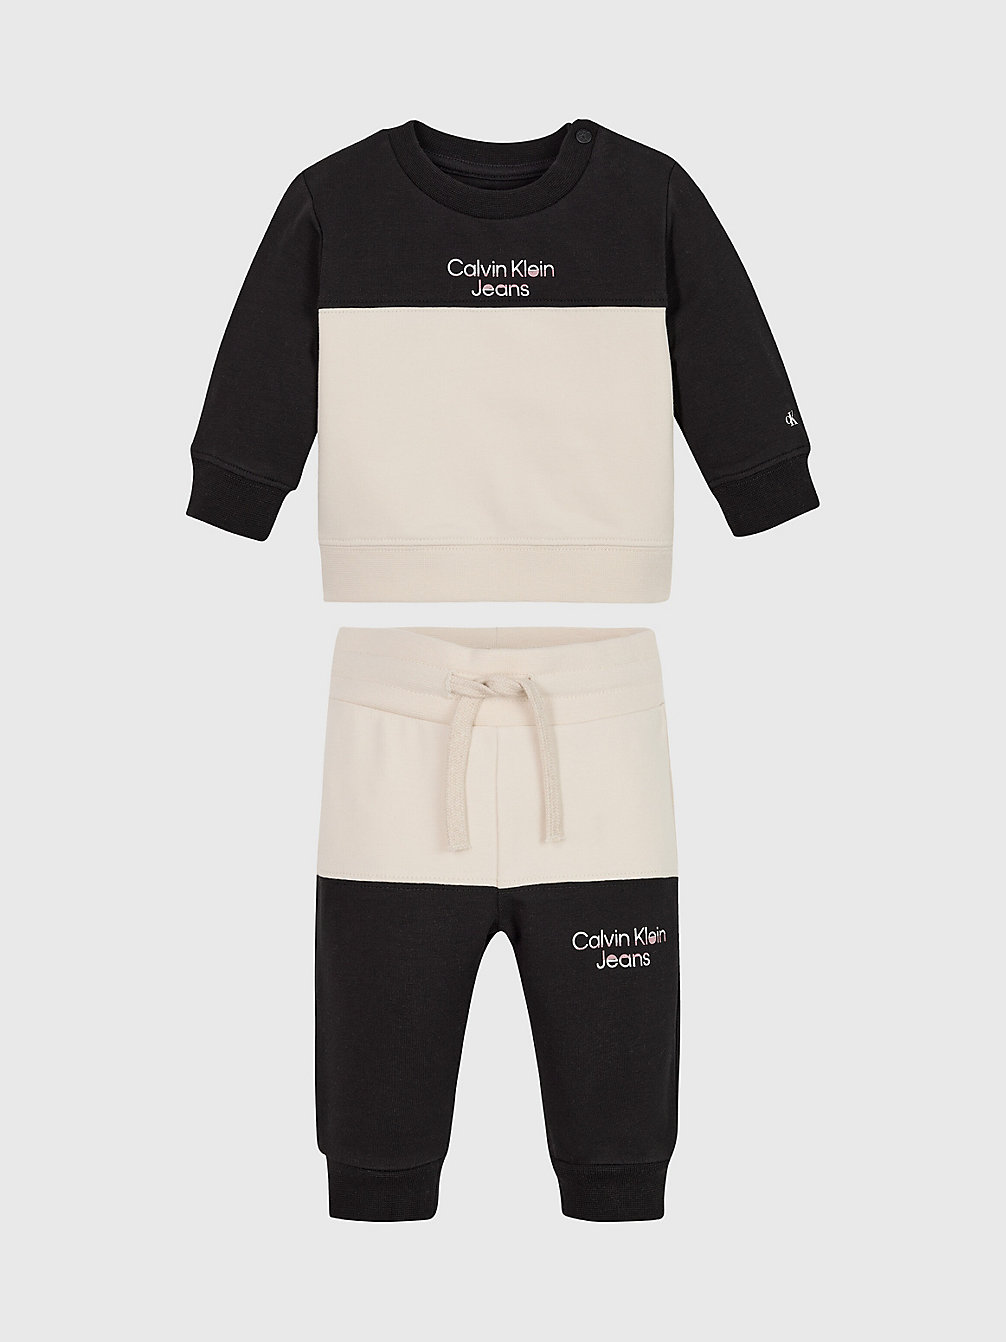 CK BLACK Survêtement Color-Block Pour Nouveau-Né undefined newborn Calvin Klein